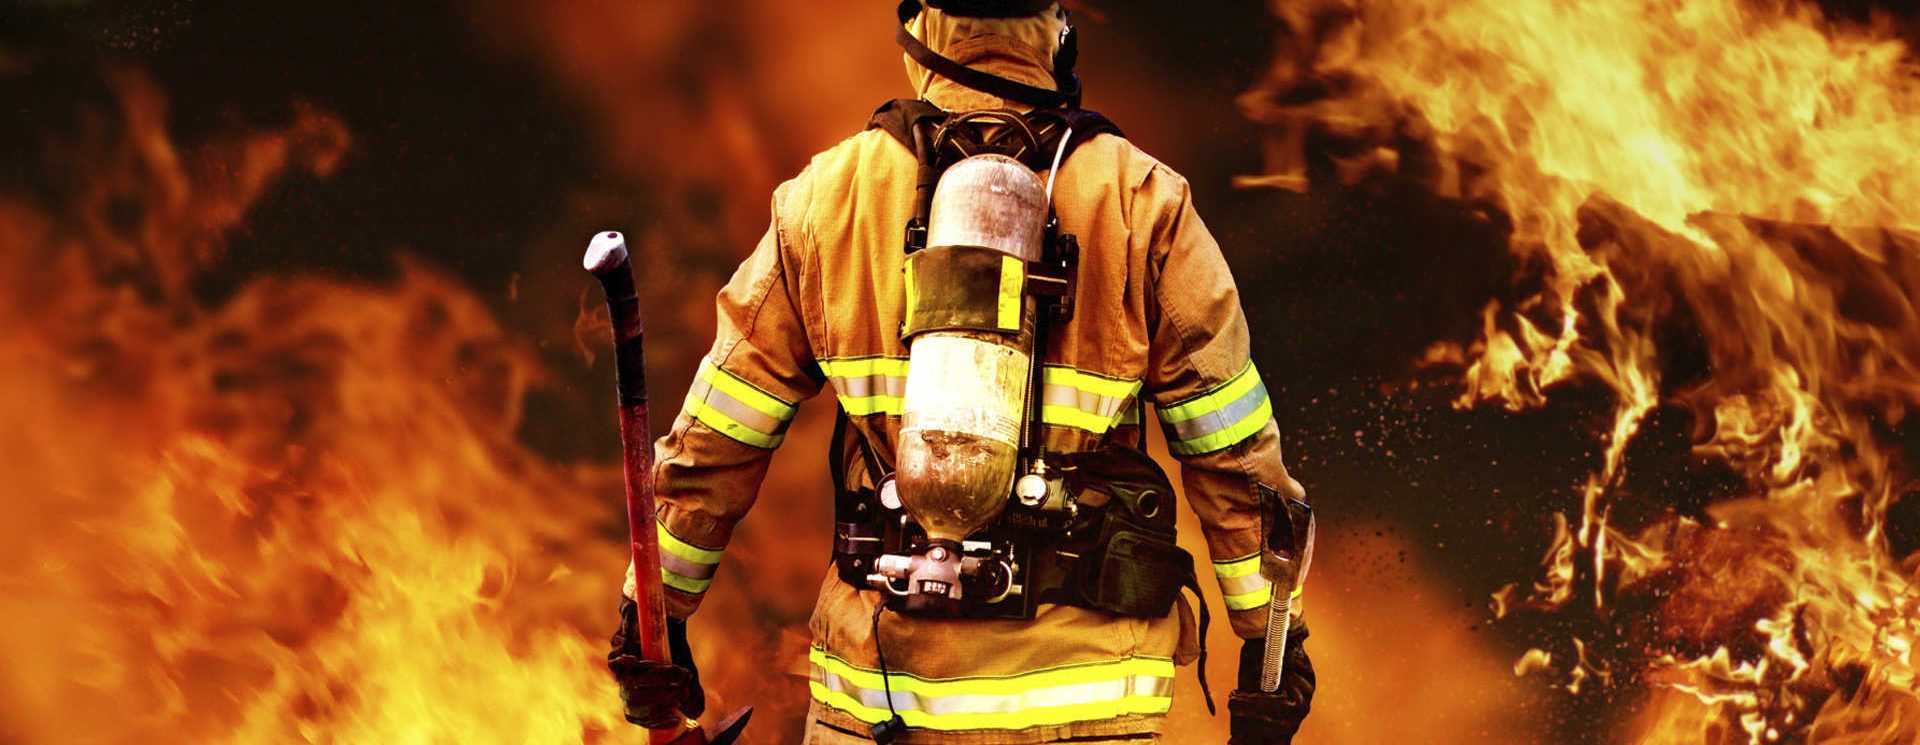 Fire Department Wallpaper - Firefighter Hd , HD Wallpaper & Backgrounds